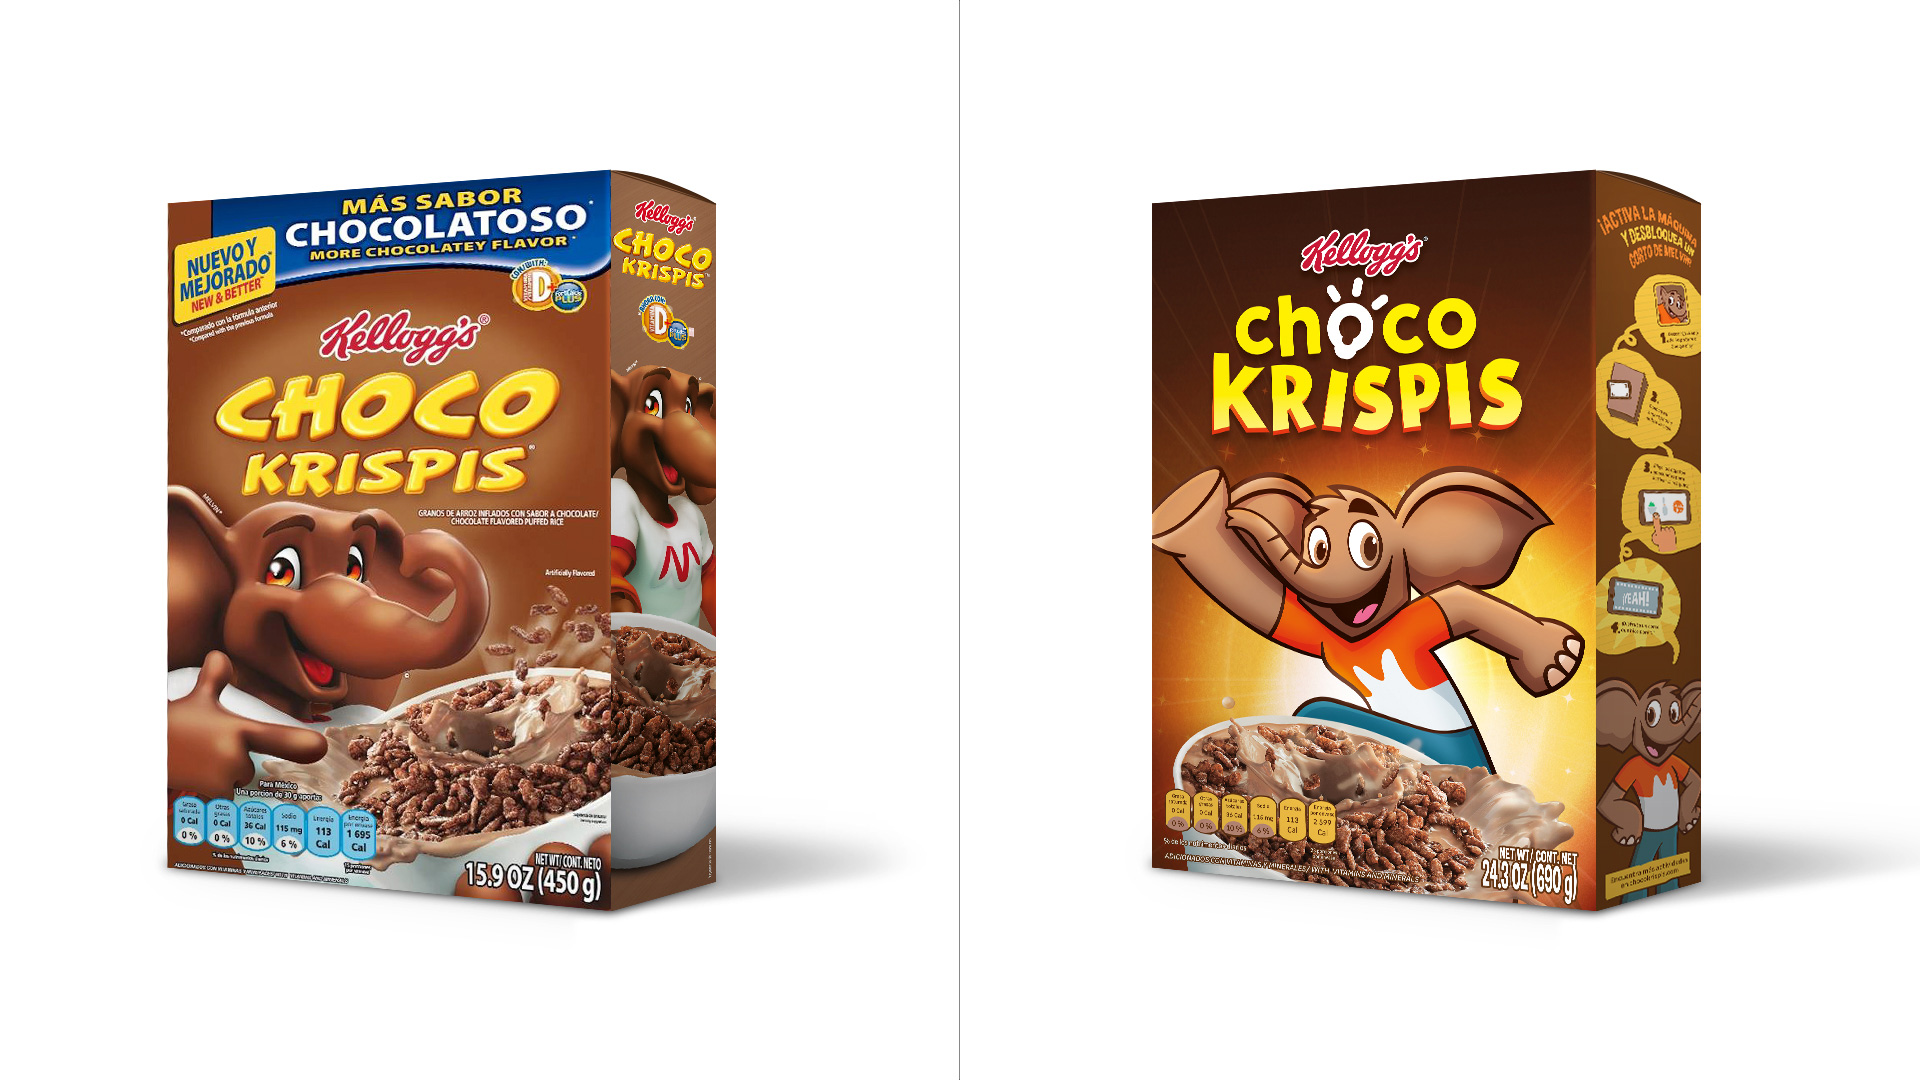 早餐麦片品牌Choco Krispis的新标识和包装